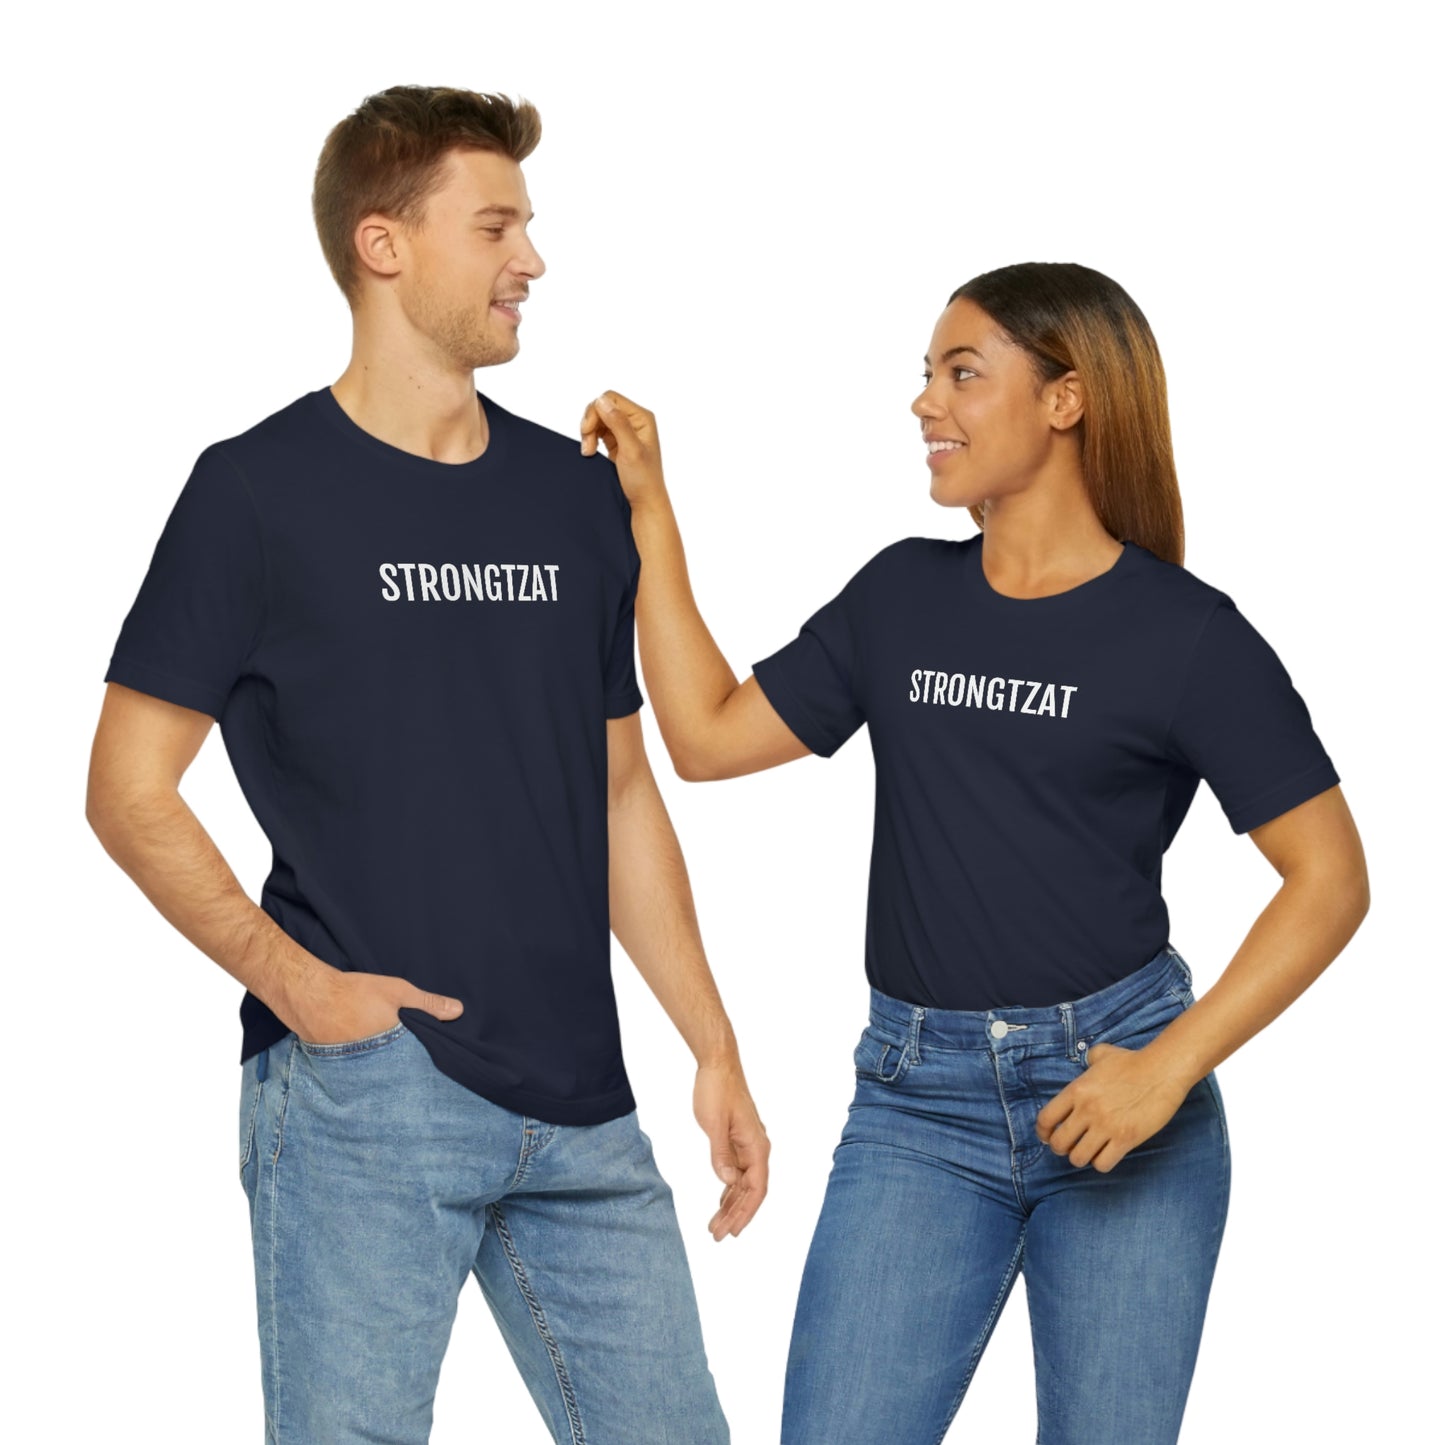 Strongtzat | Unisex T-Shirt uit Oost-Vlaanderen - koppel met marine blauwe shirts